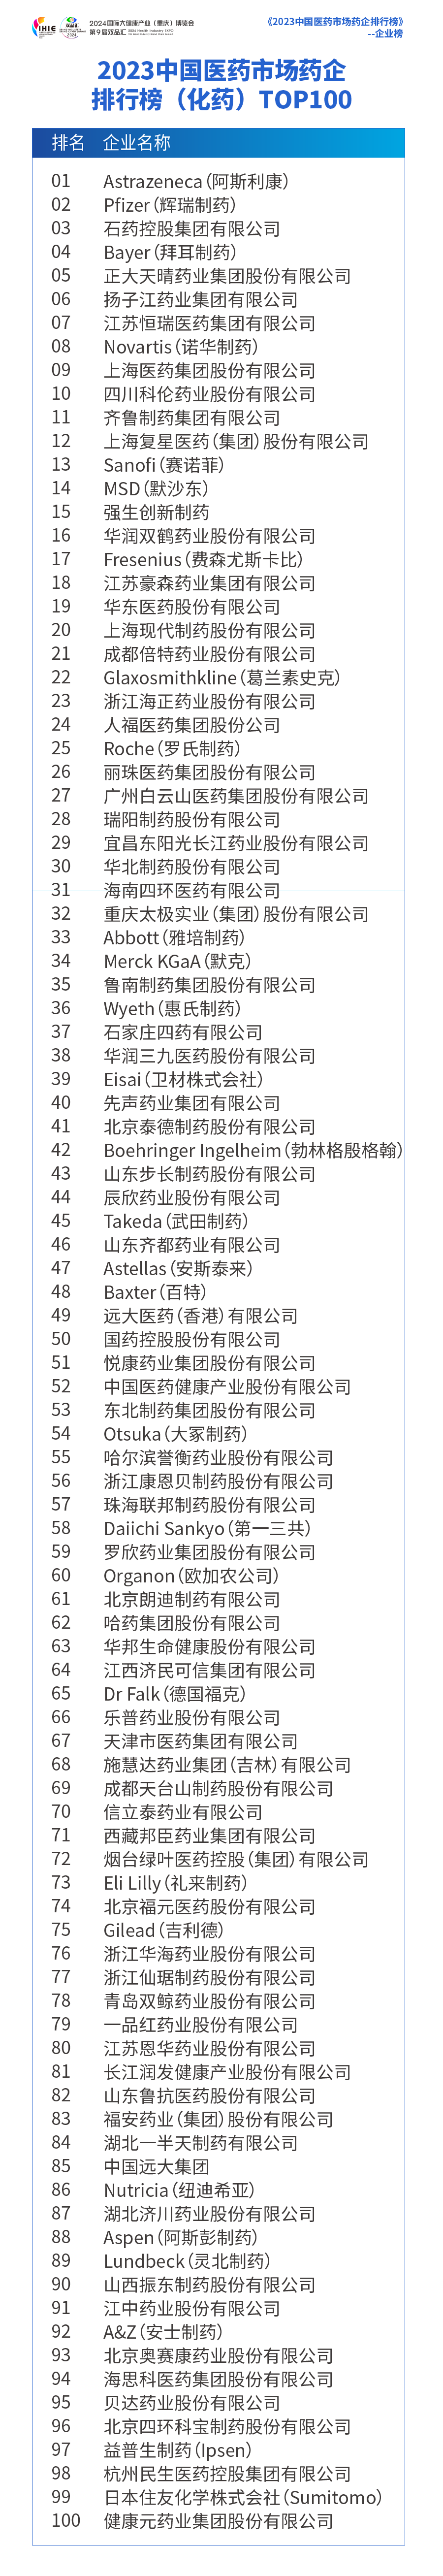 中国医药市场药企排行榜TOP100